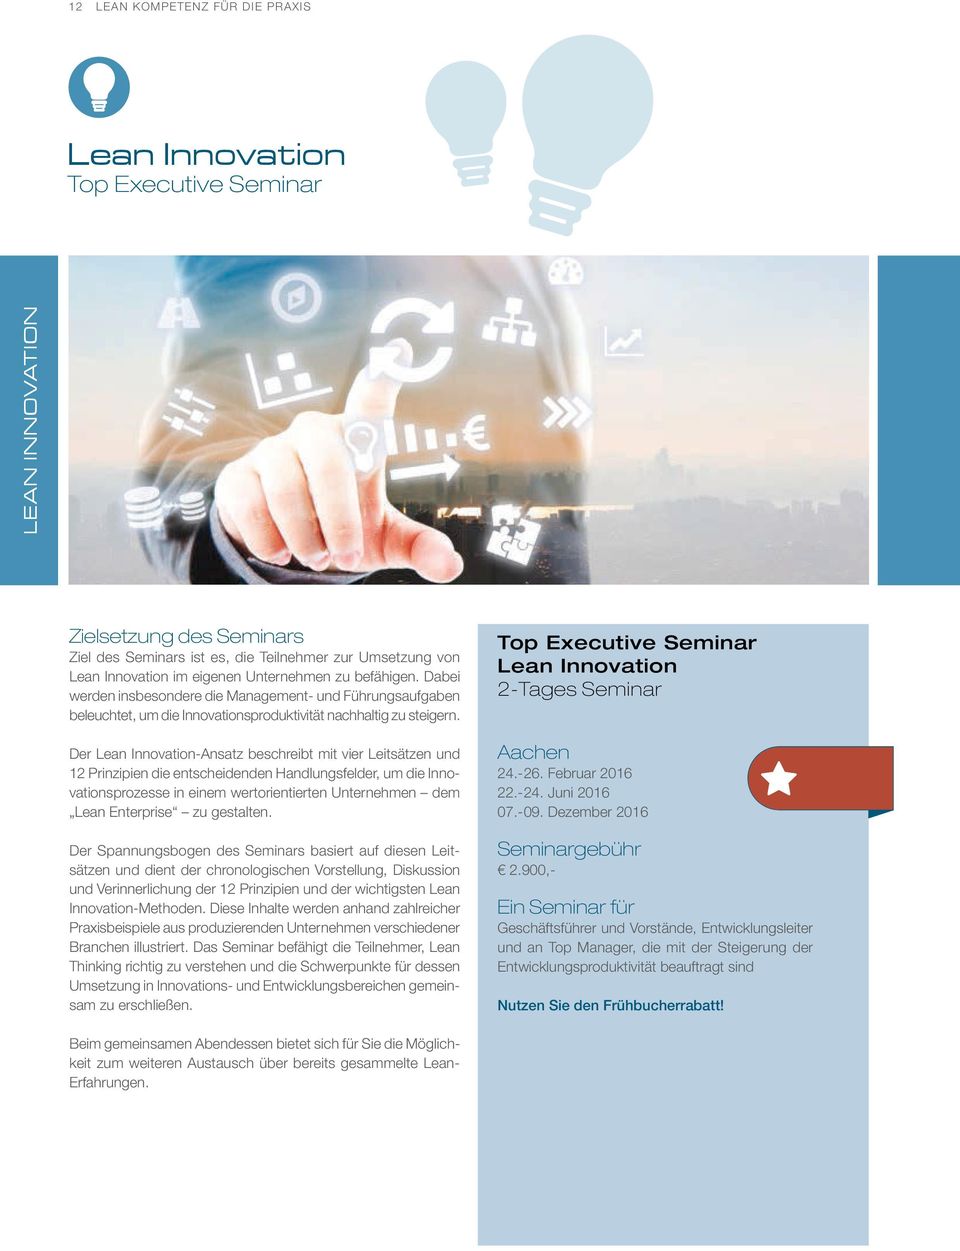 Der Lean Innovation-Ansatz beschreibt mit vier Leitsätzen und 12 Prinzipien die entscheidenden Handlungsfelder, um die Innovationsprozesse in einem wertorientierten Unternehmen dem Lean Enterprise zu